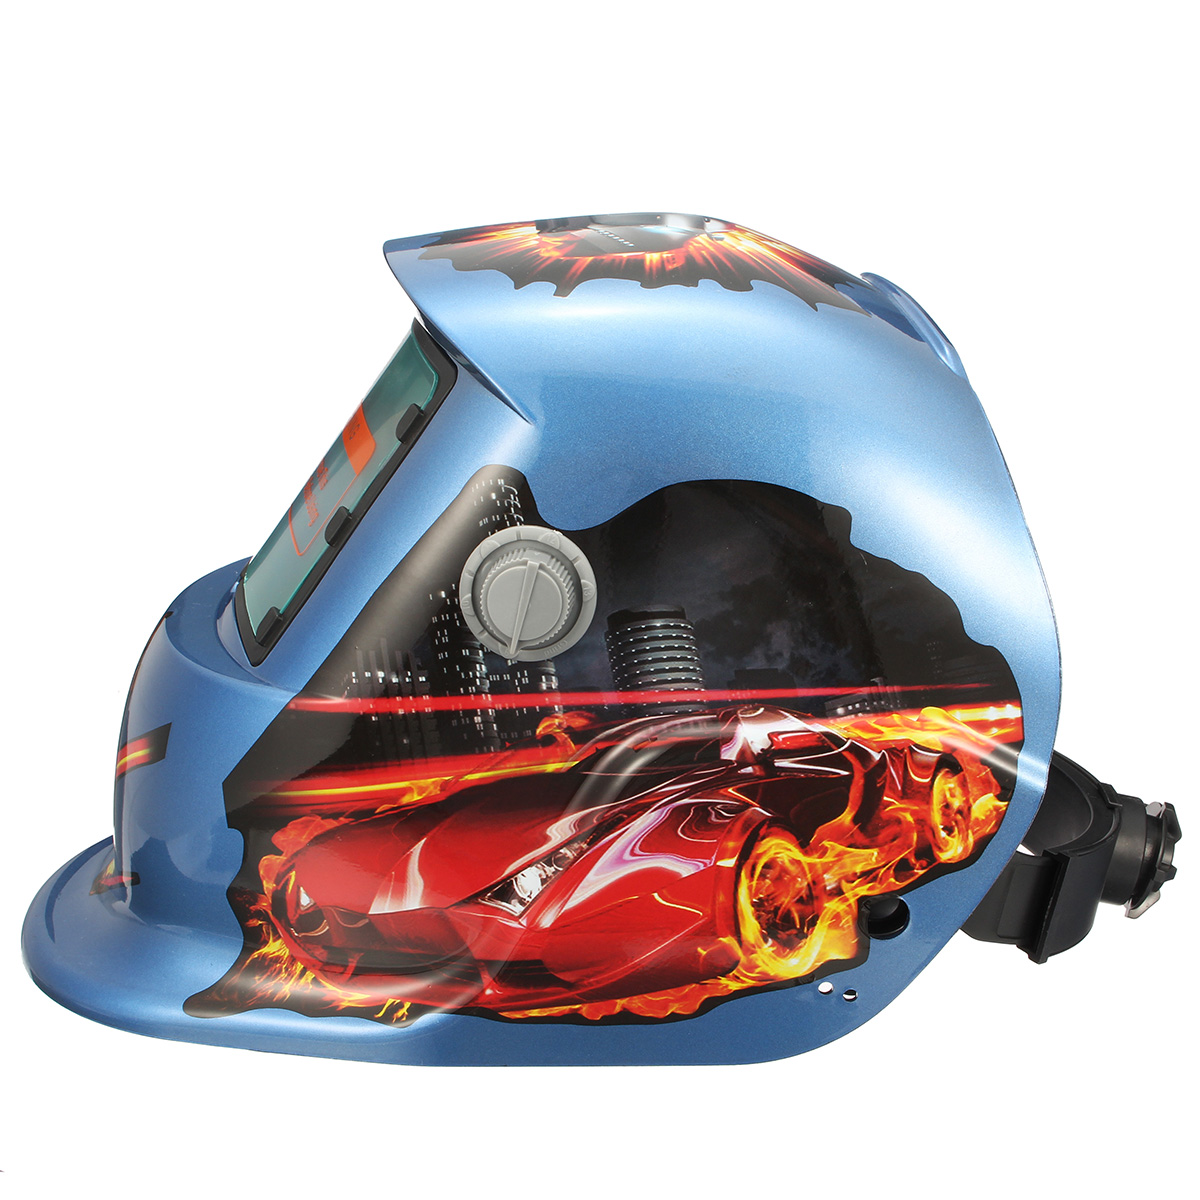 Fire-Pro-Solar-Auto-Welding-Darkening-Helmet-Arc-Tig-mig-Grinding-Welders-Mask-1326755-3